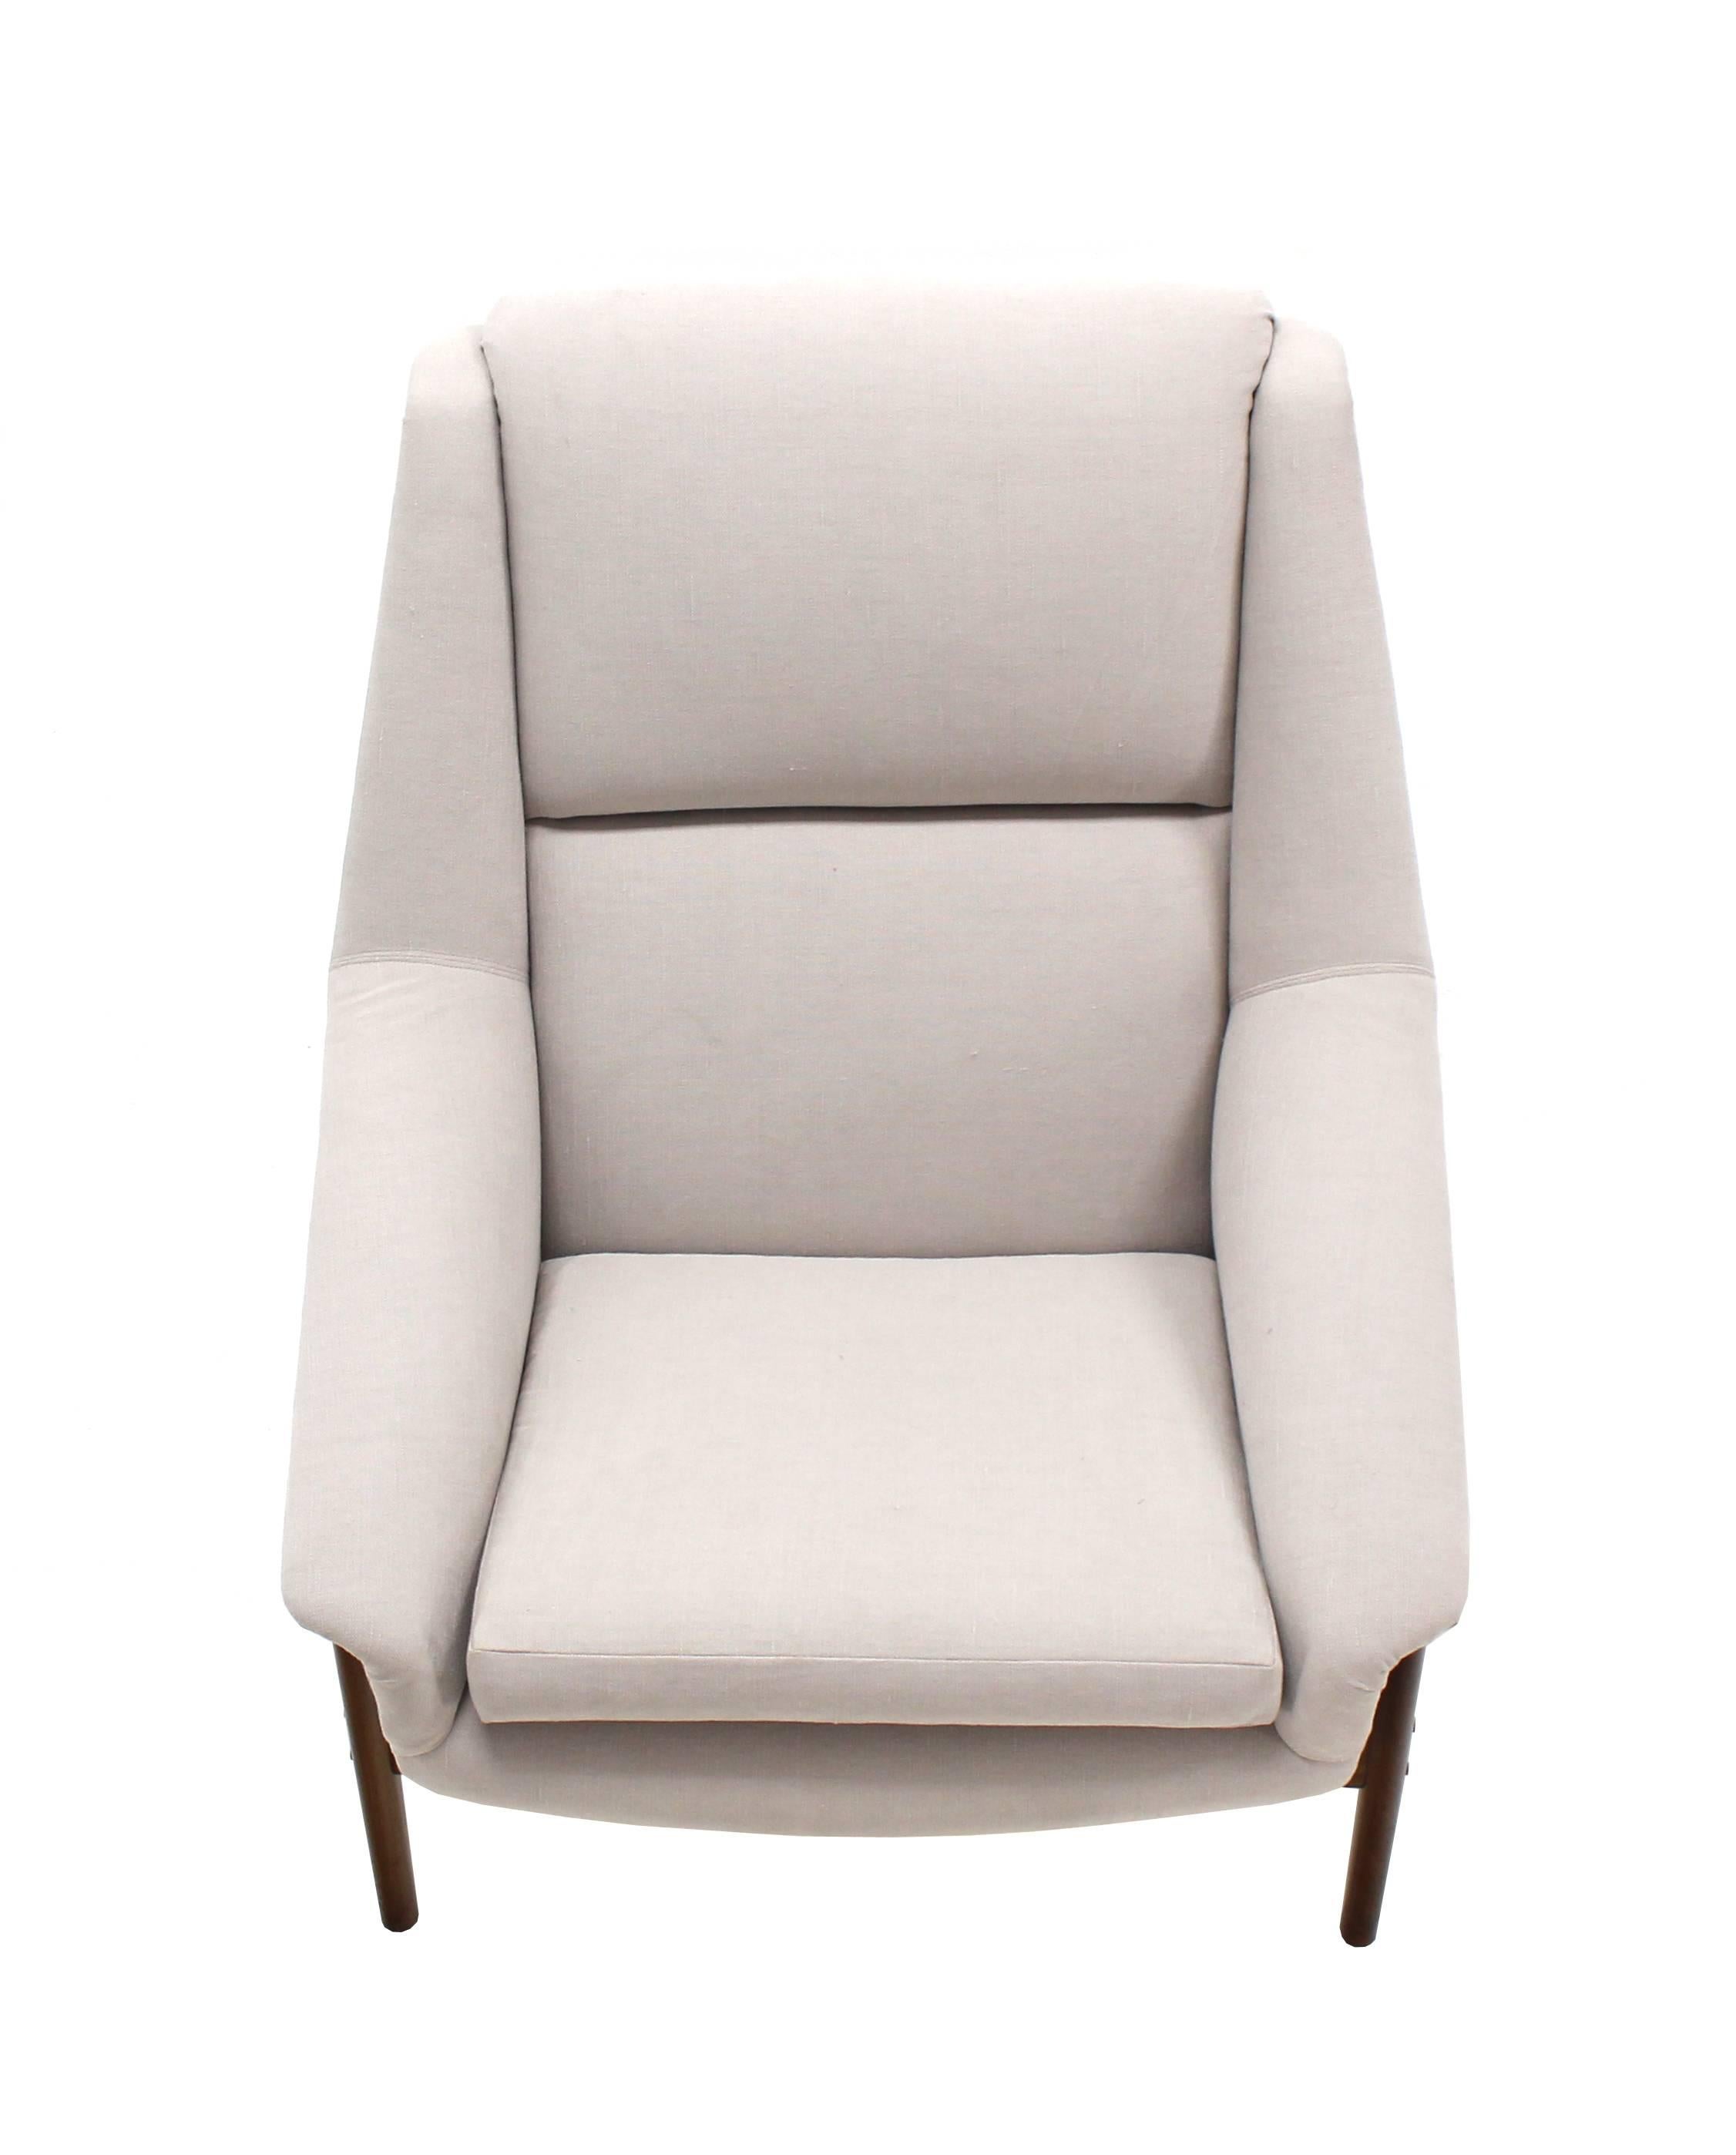 Danish Mid Century Modern New Upholstery Lounge Chair Teak Frame 1